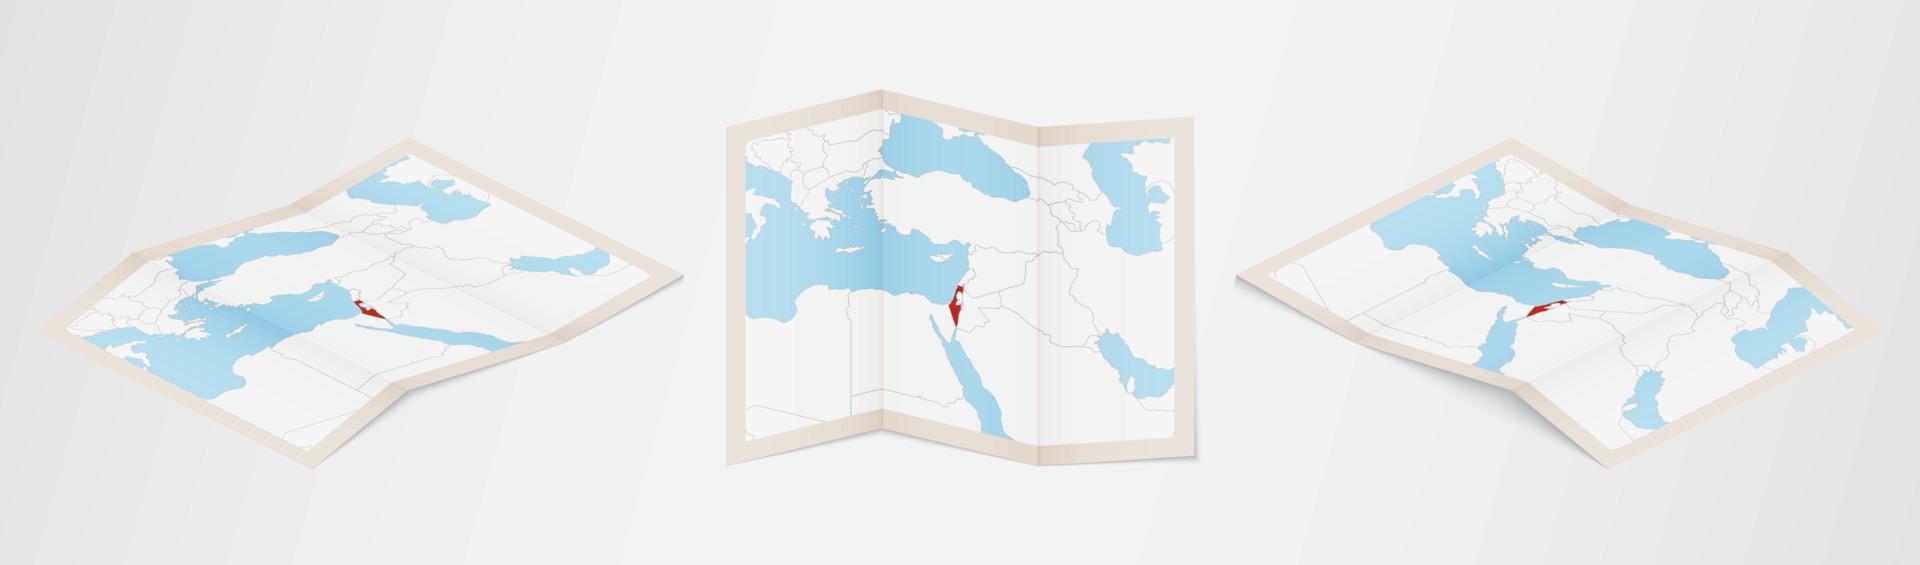 gevouwen kaart van Israël in drie verschillend versies. vector